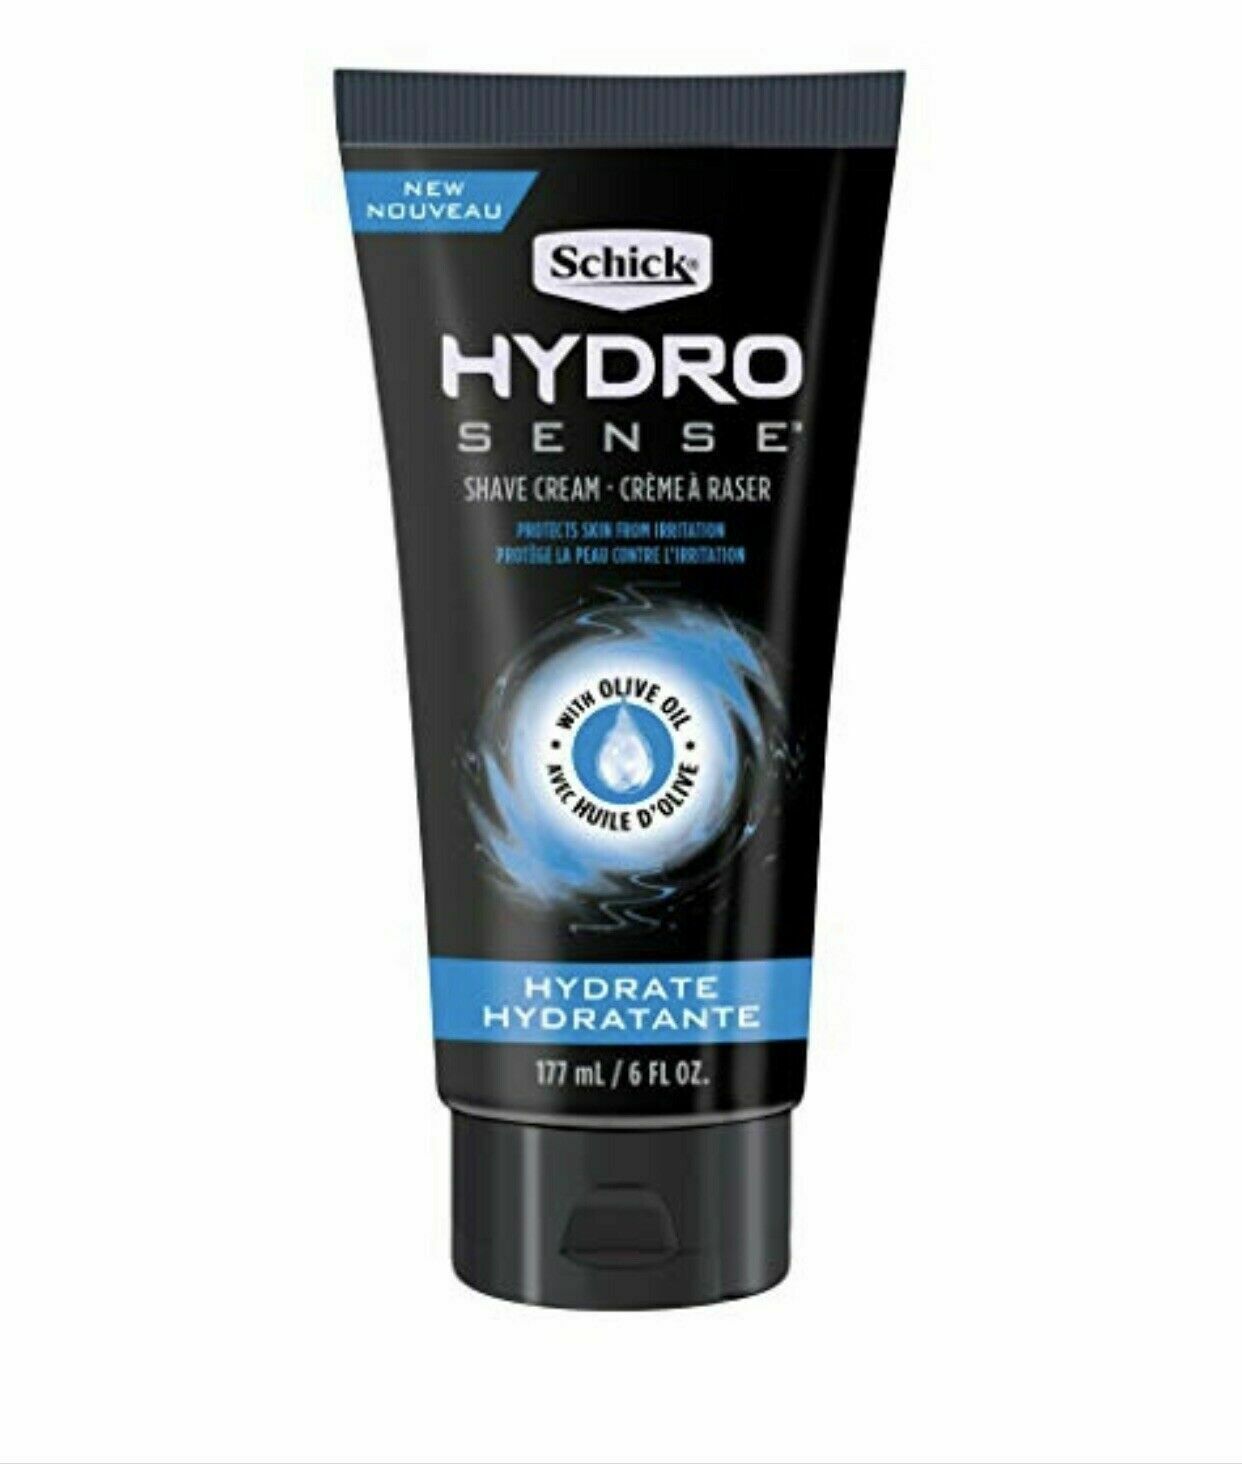 NEW Schick Hydro Sense Shave Cream with Olive Oil 6 Oz - $12.71